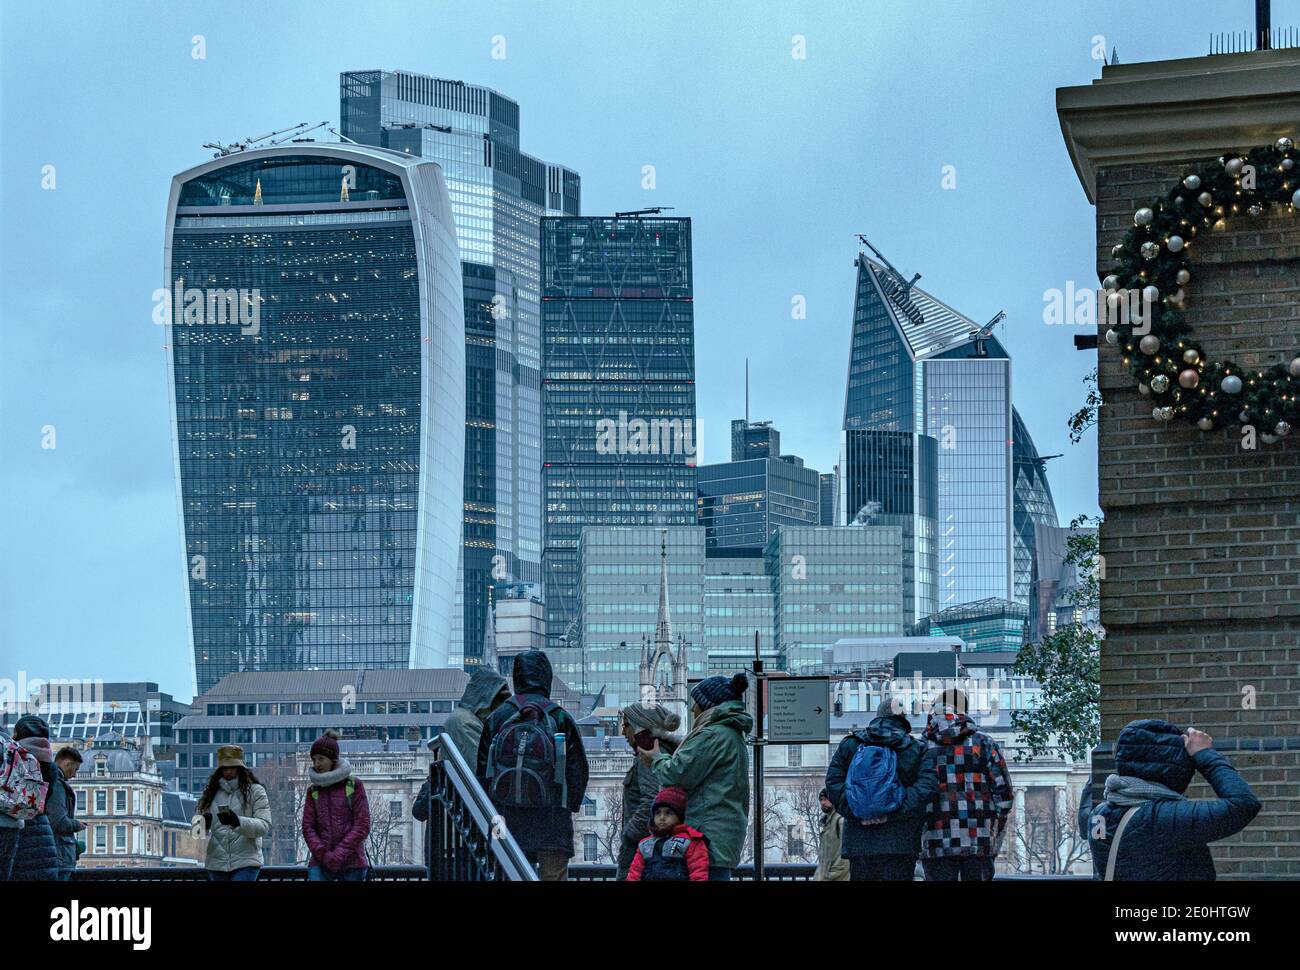 Persone all'ingresso di Hays Galleria con la Città di Londra con la Walkie Talkie e altri grattacieli sullo sfondo, City of London, UK Foto Stock